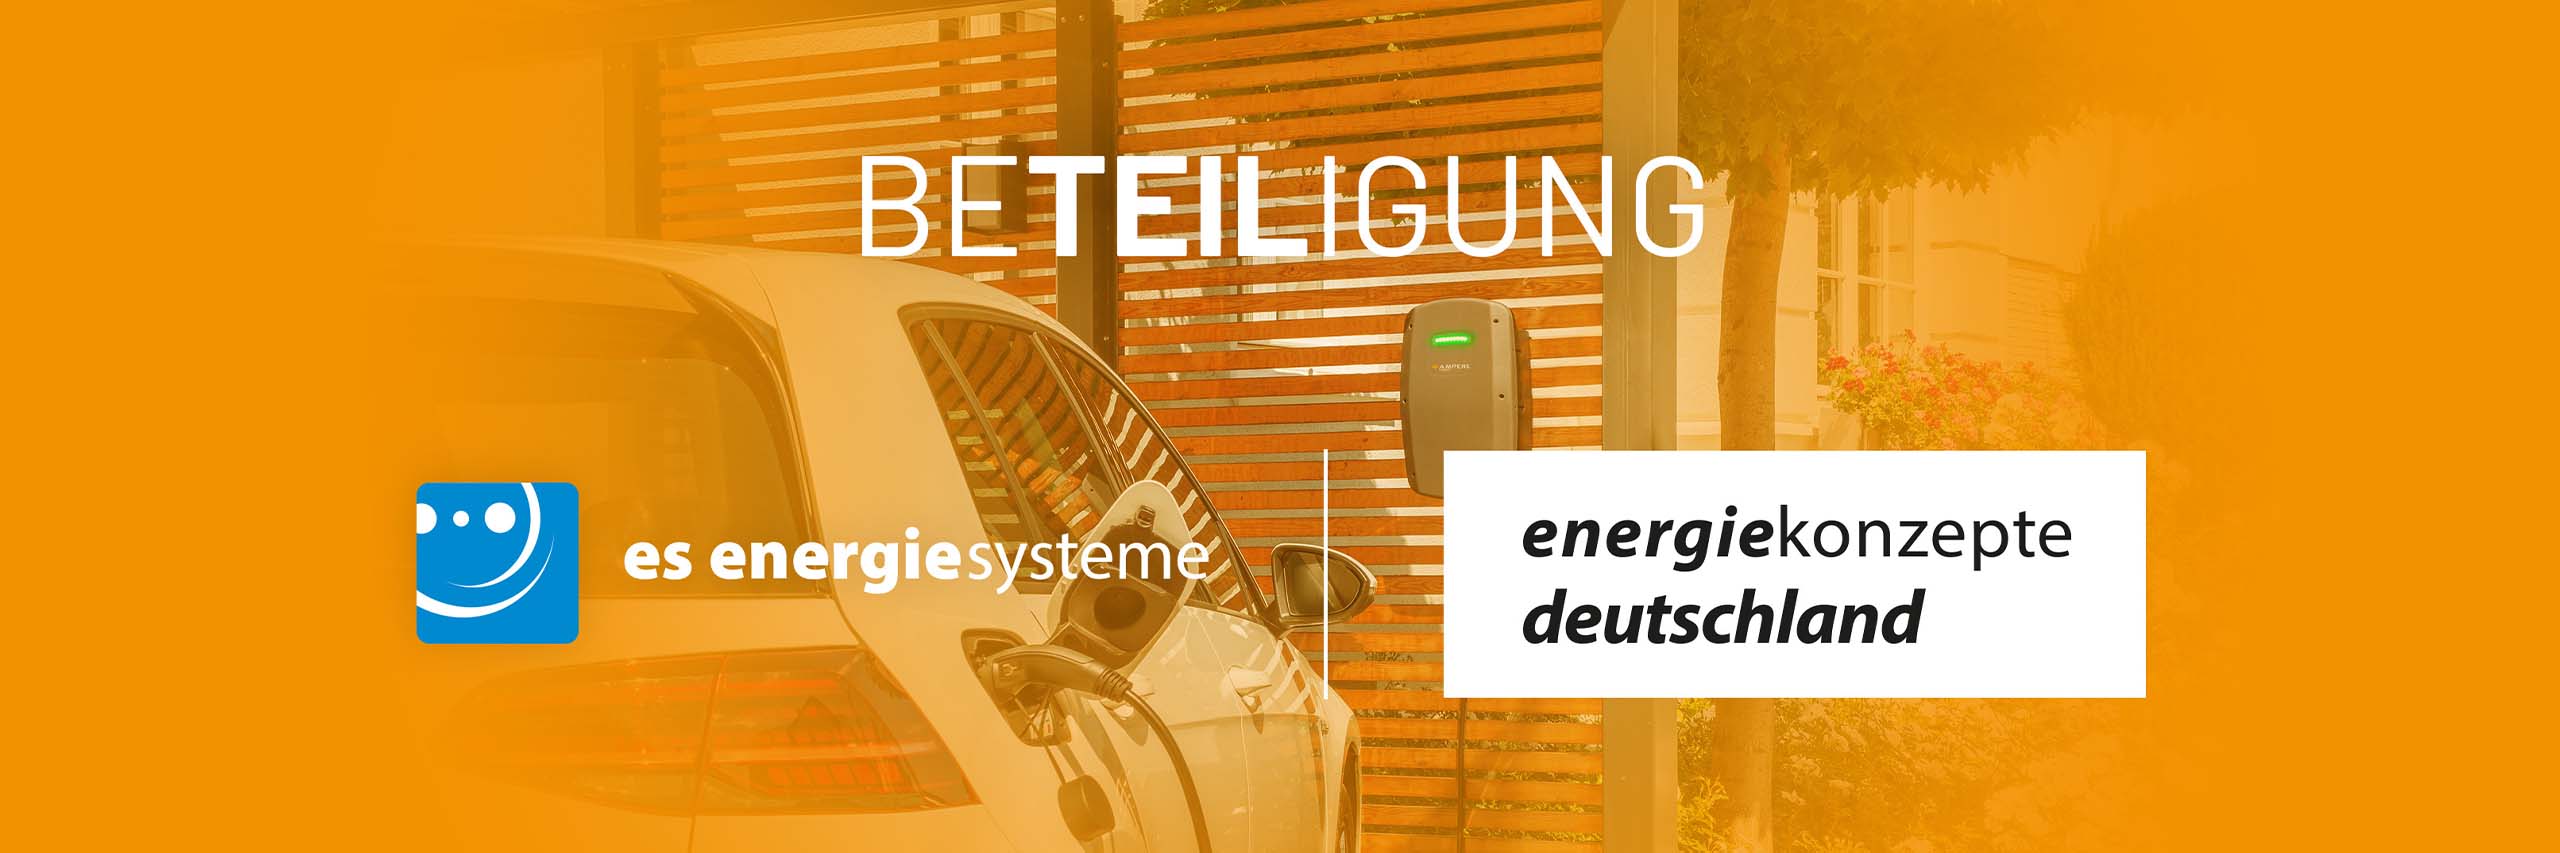 Das Logo von es energiesysteme und energiekonzepte deutschland mit der Überschrift Beteiligung